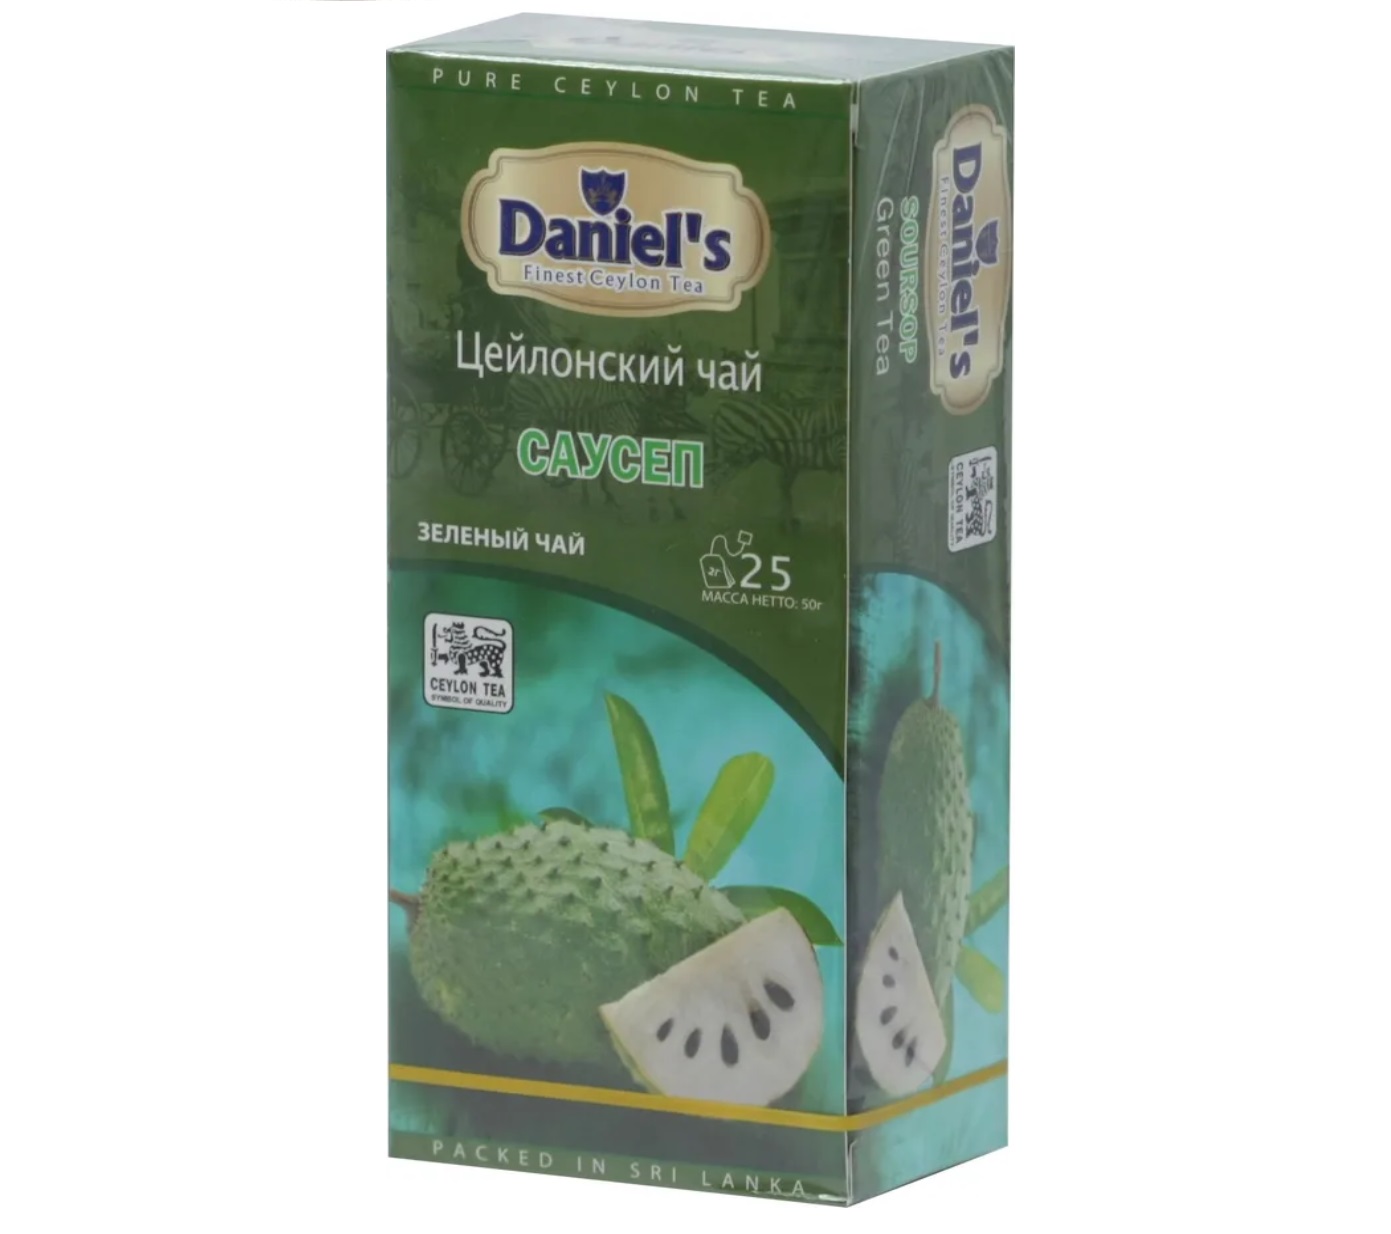 Чай зеленый Саусеп,Daniel's, 25 пакетиков